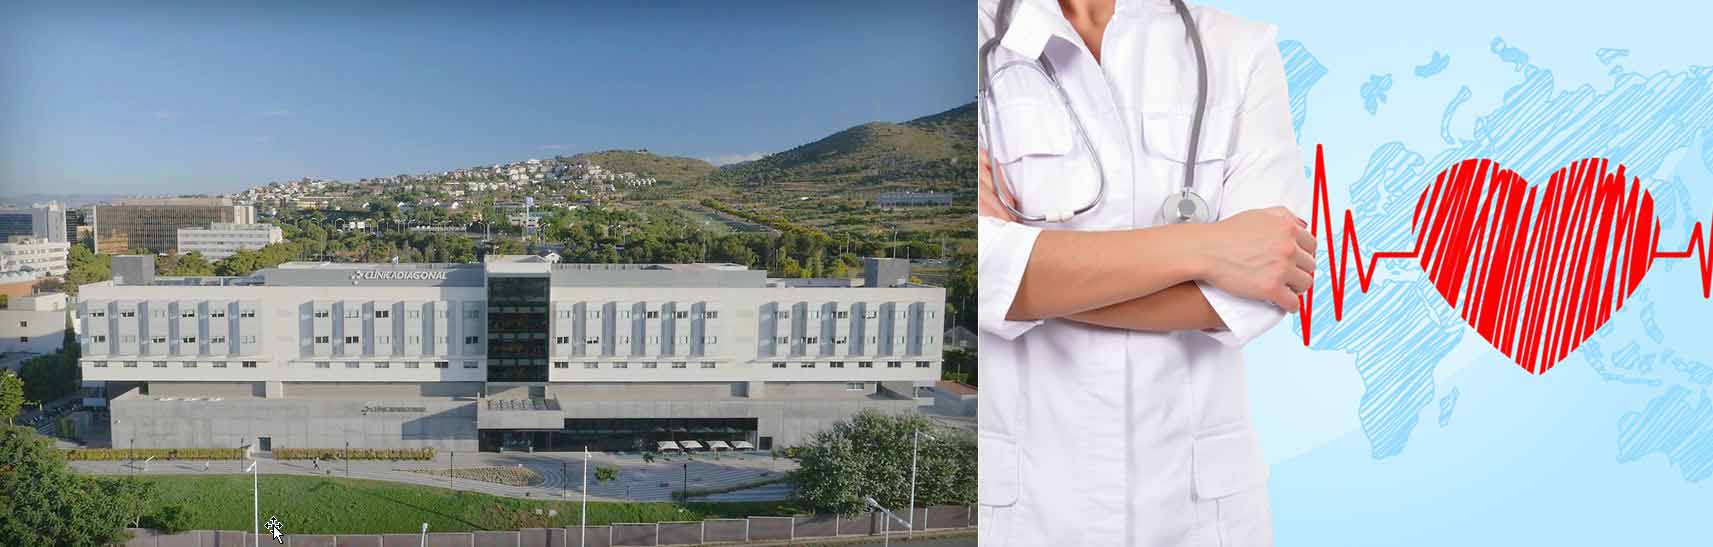 مستشفى دياغونال برشلونة إسبانيا طب القلب، أمراض القلب. أمراض القلب مجازة الشريان التاجي تشوهات القلب